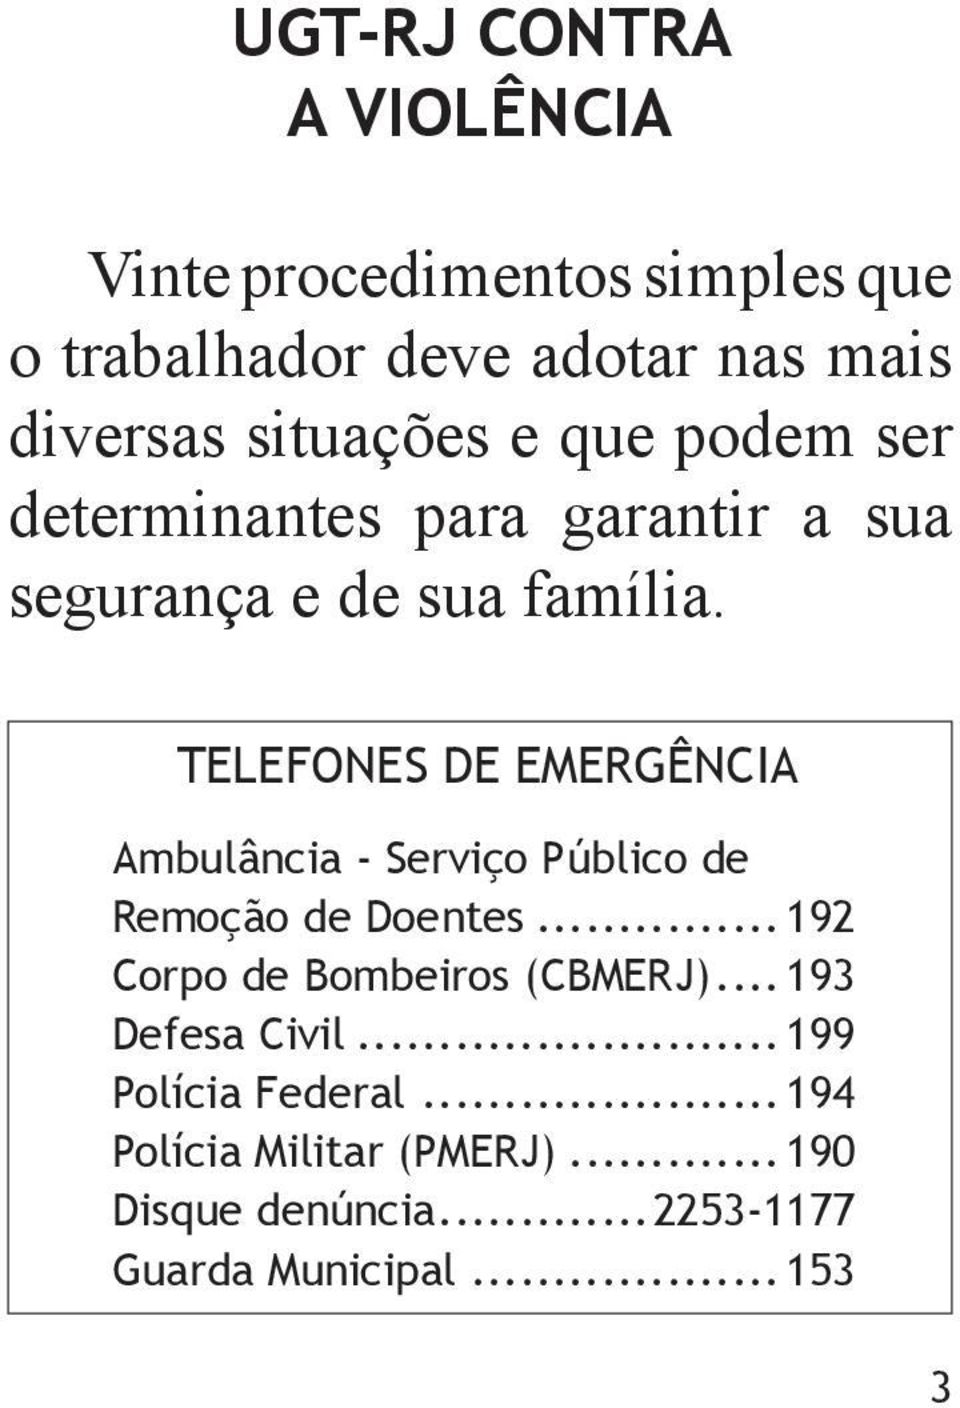 TELEFONES DE EMERGÊNCIA Ambulância - Serviço Público de Remoção de Doentes...192 Corpo de Bombeiros (CBMERJ).